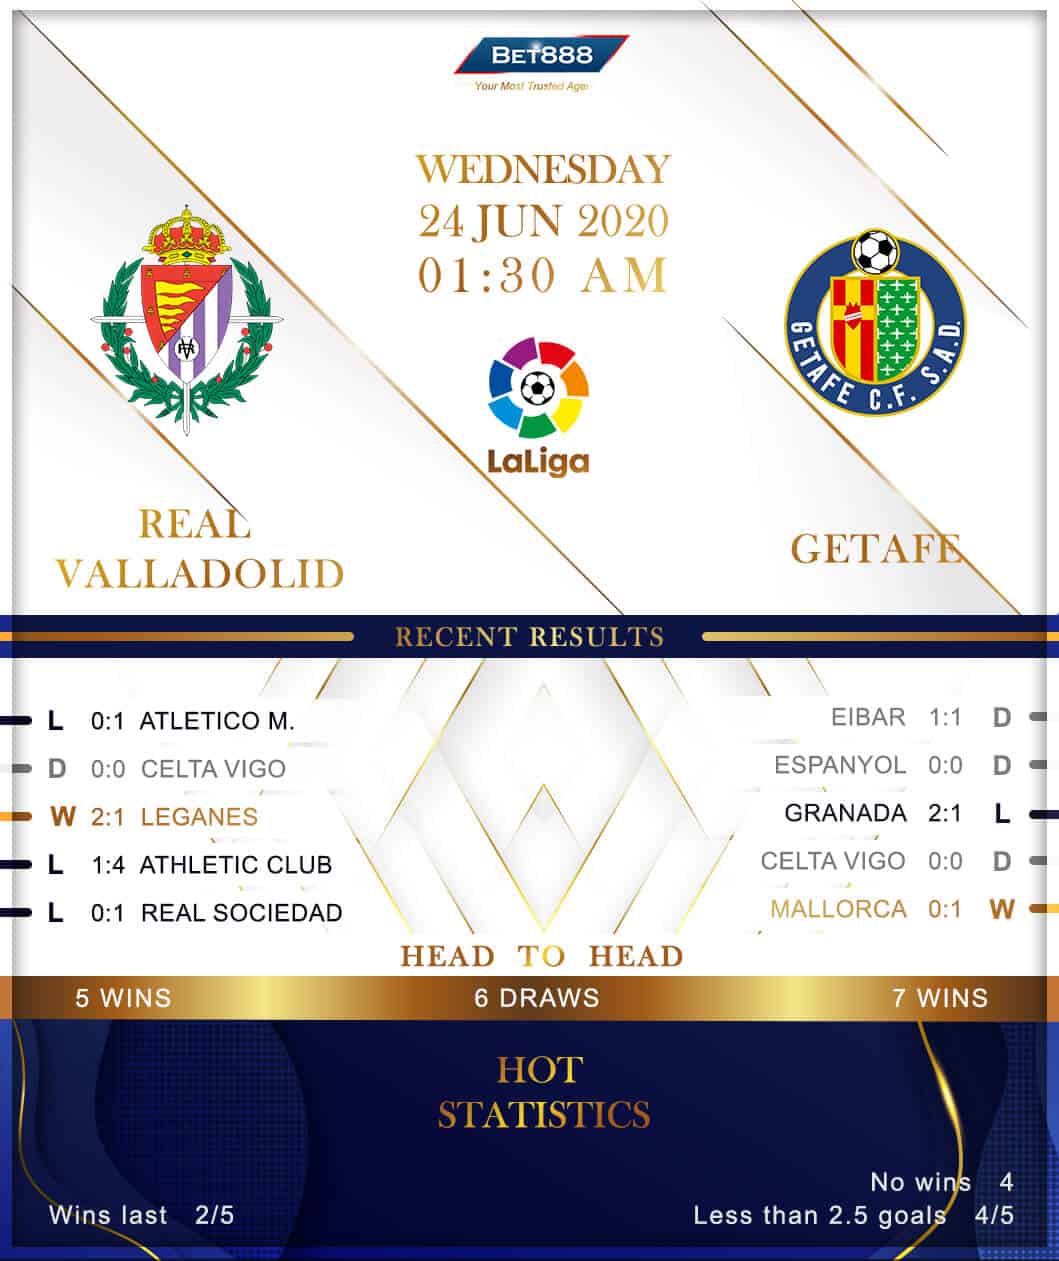 Real Valladolid vs Getafe 24/06/20